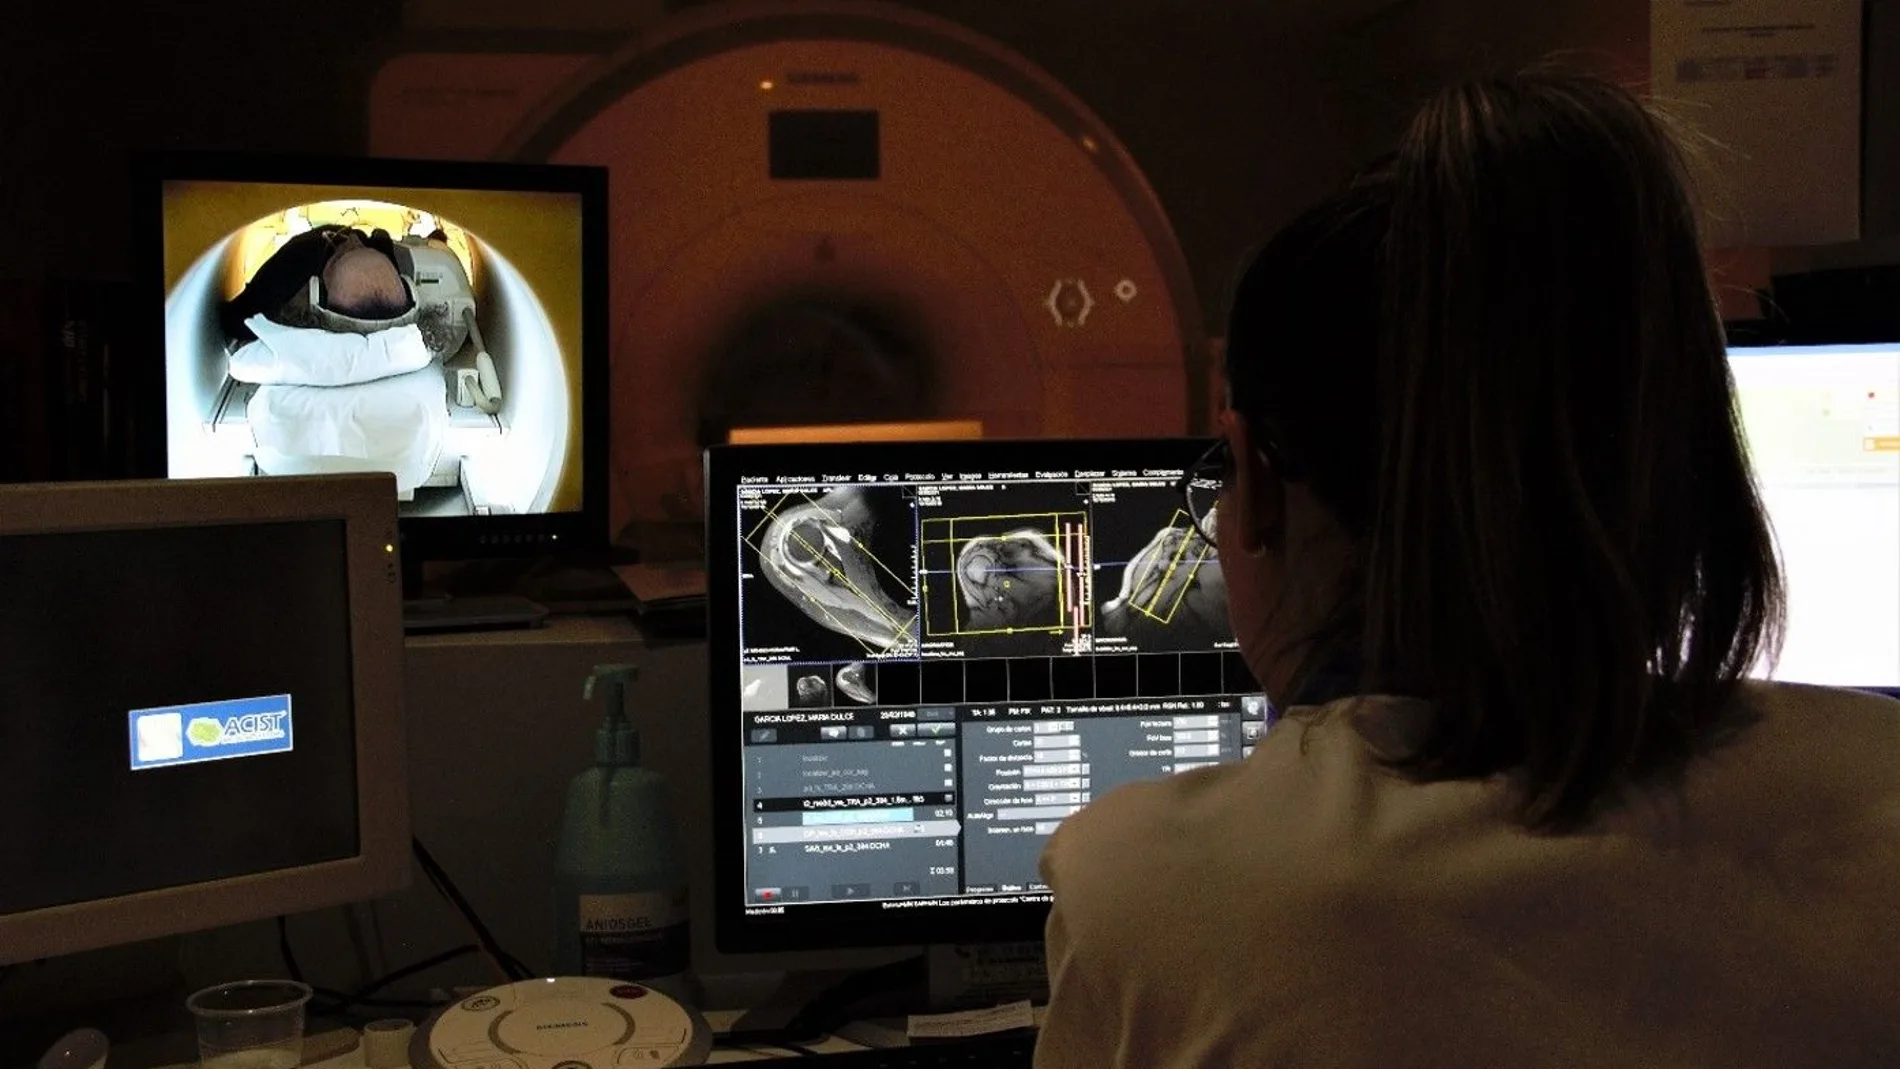 Médica analizando imágenes médicas en un ordenador, en la sala de control de resonancia magnética.